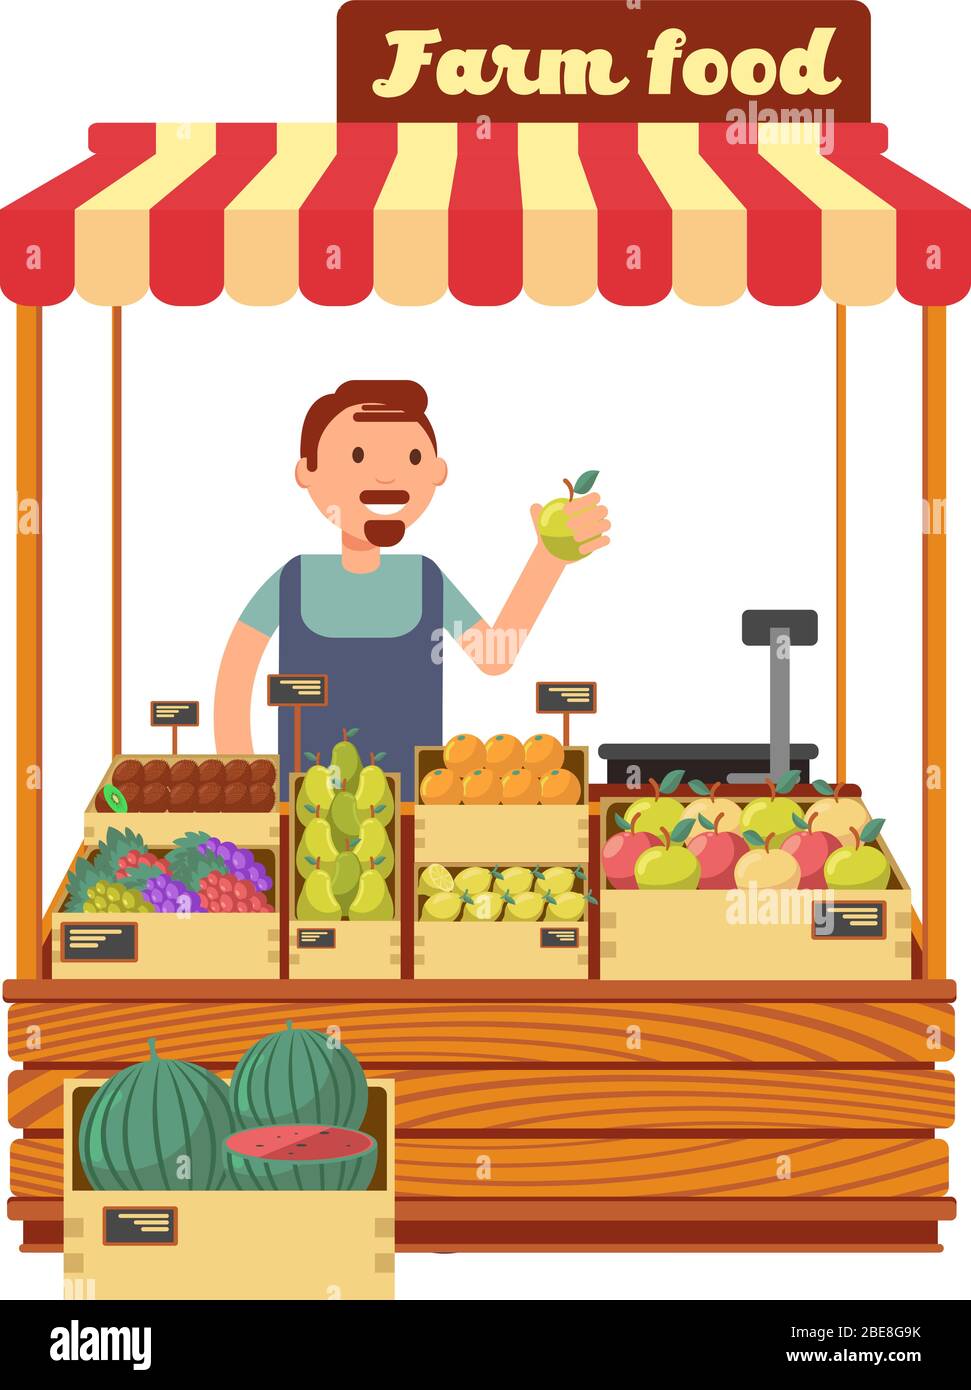 Les magasins de fruits et légumes sont équipés d'une illustration vectorielle plate de personnage de jeune agriculteur. Marché agricole avec fruits, homme de caractère vendeur de nourriture agricole Illustration de Vecteur